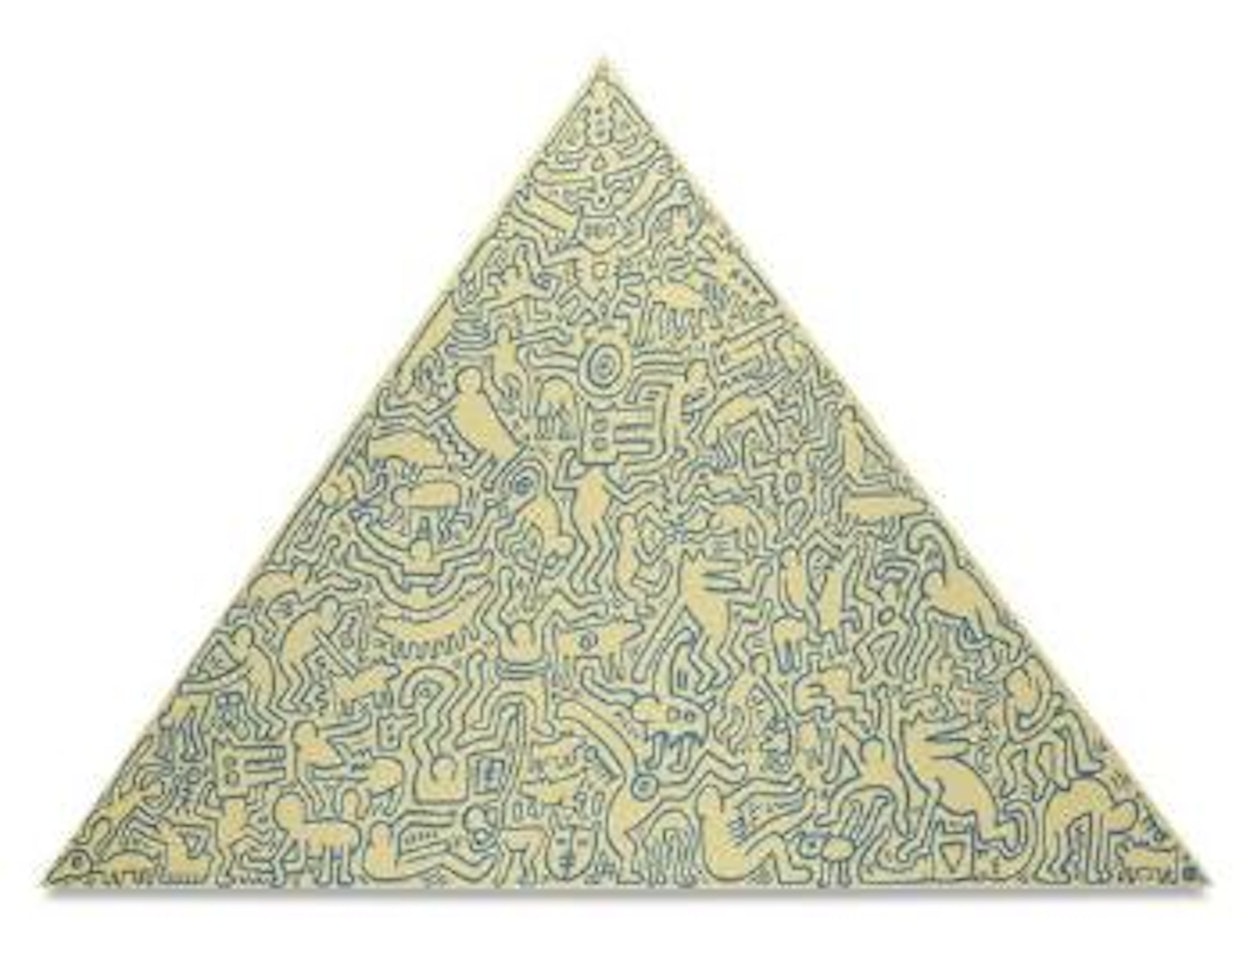 Pyramid by Keith Haring